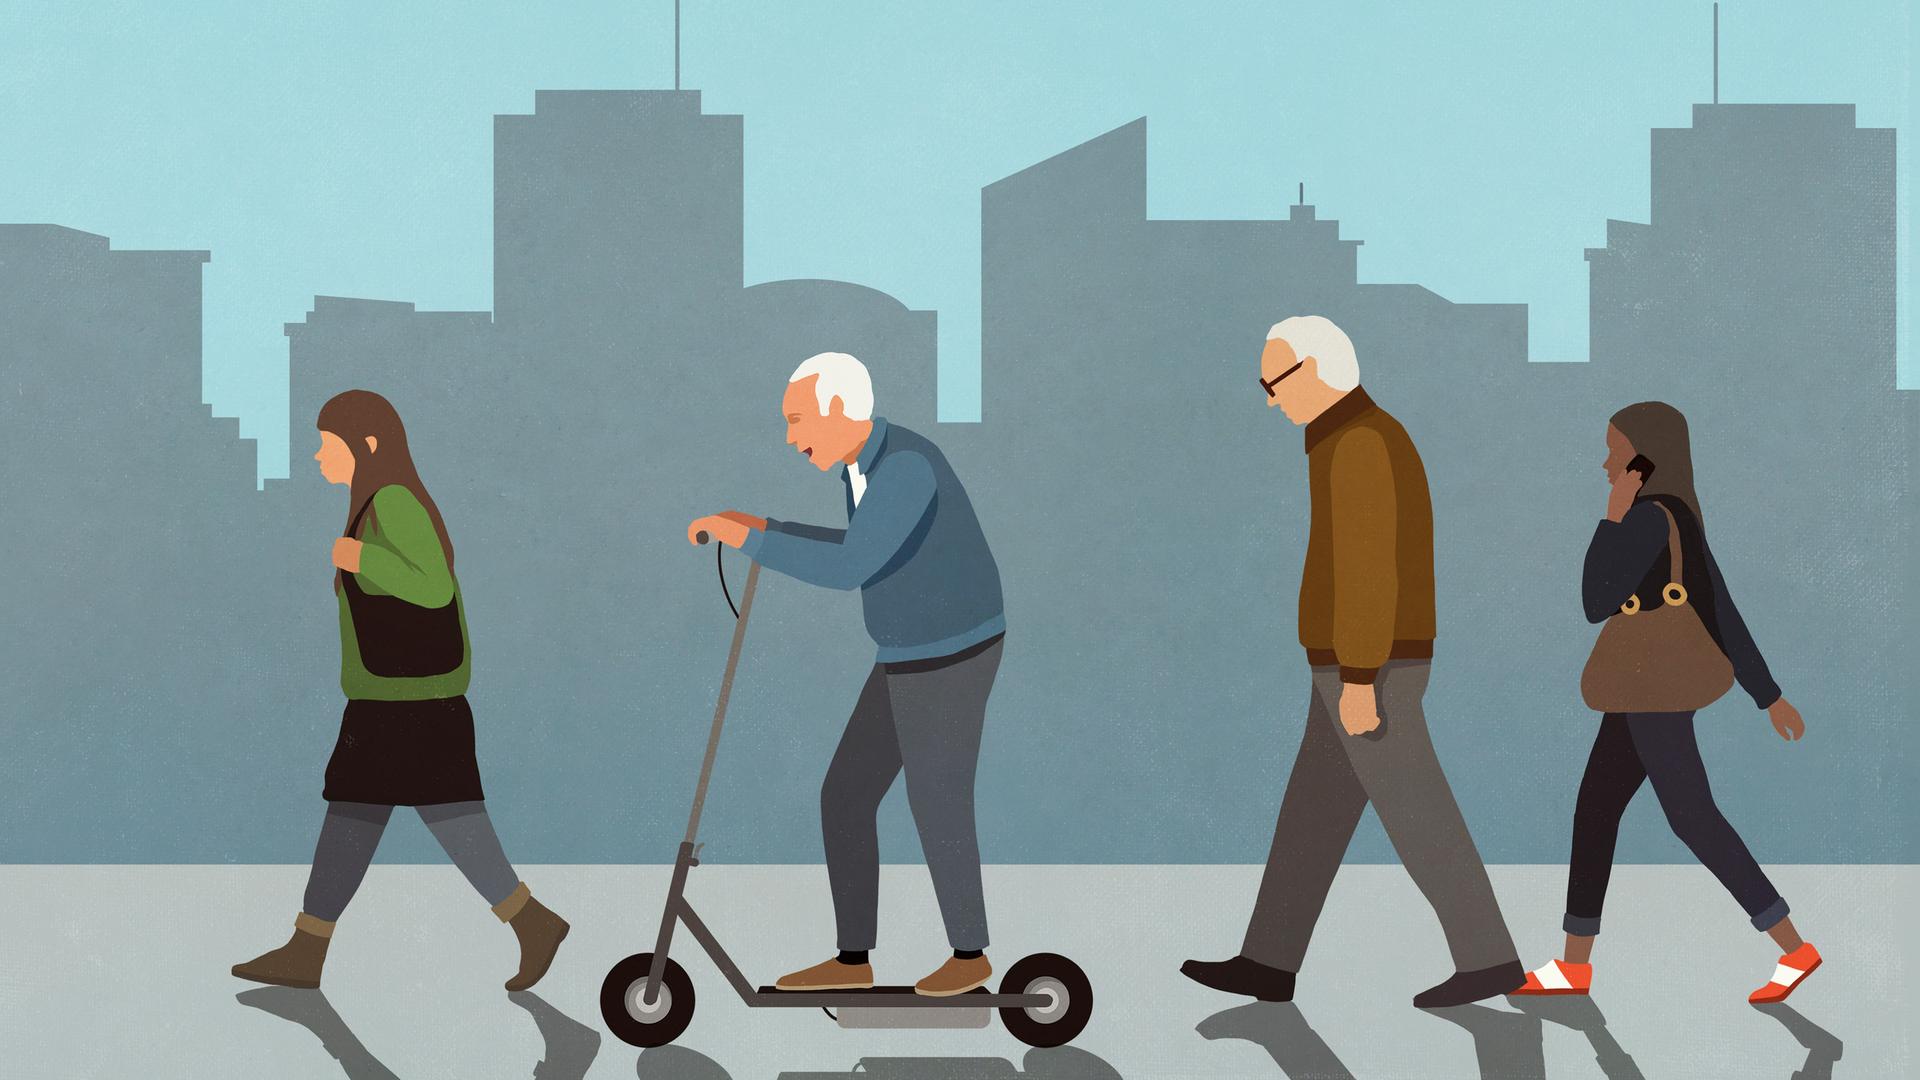 Illustration von vier Personen, darunter zwei Rentner